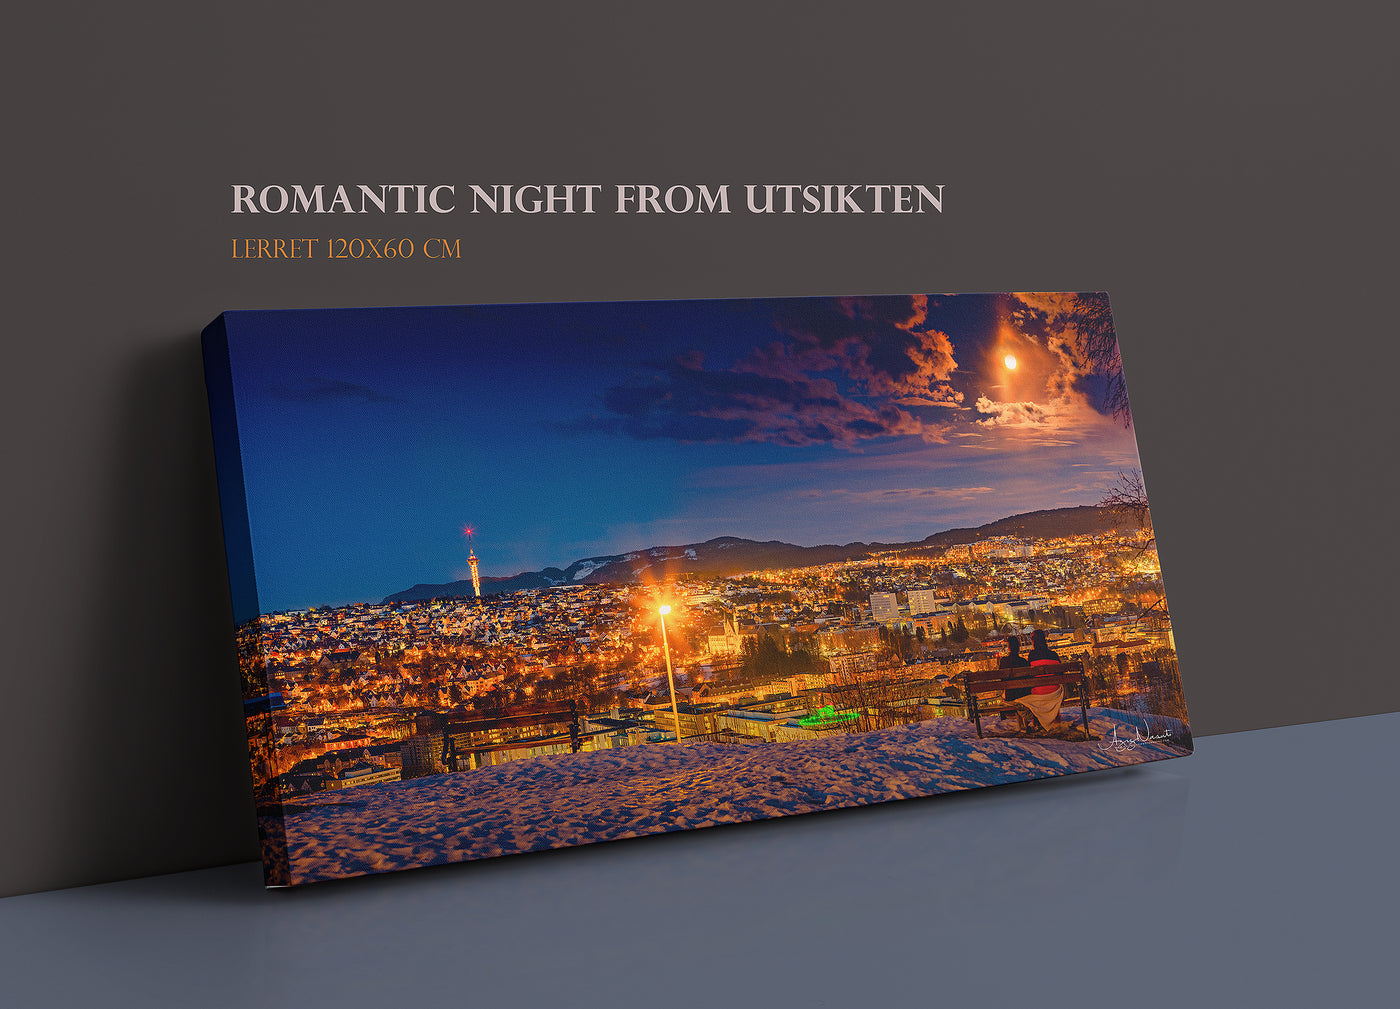 That Romantic Night Over Trondheim From Utsikten (Lerret 120X60cm) - AZIZ NASUTI ART GALLERY